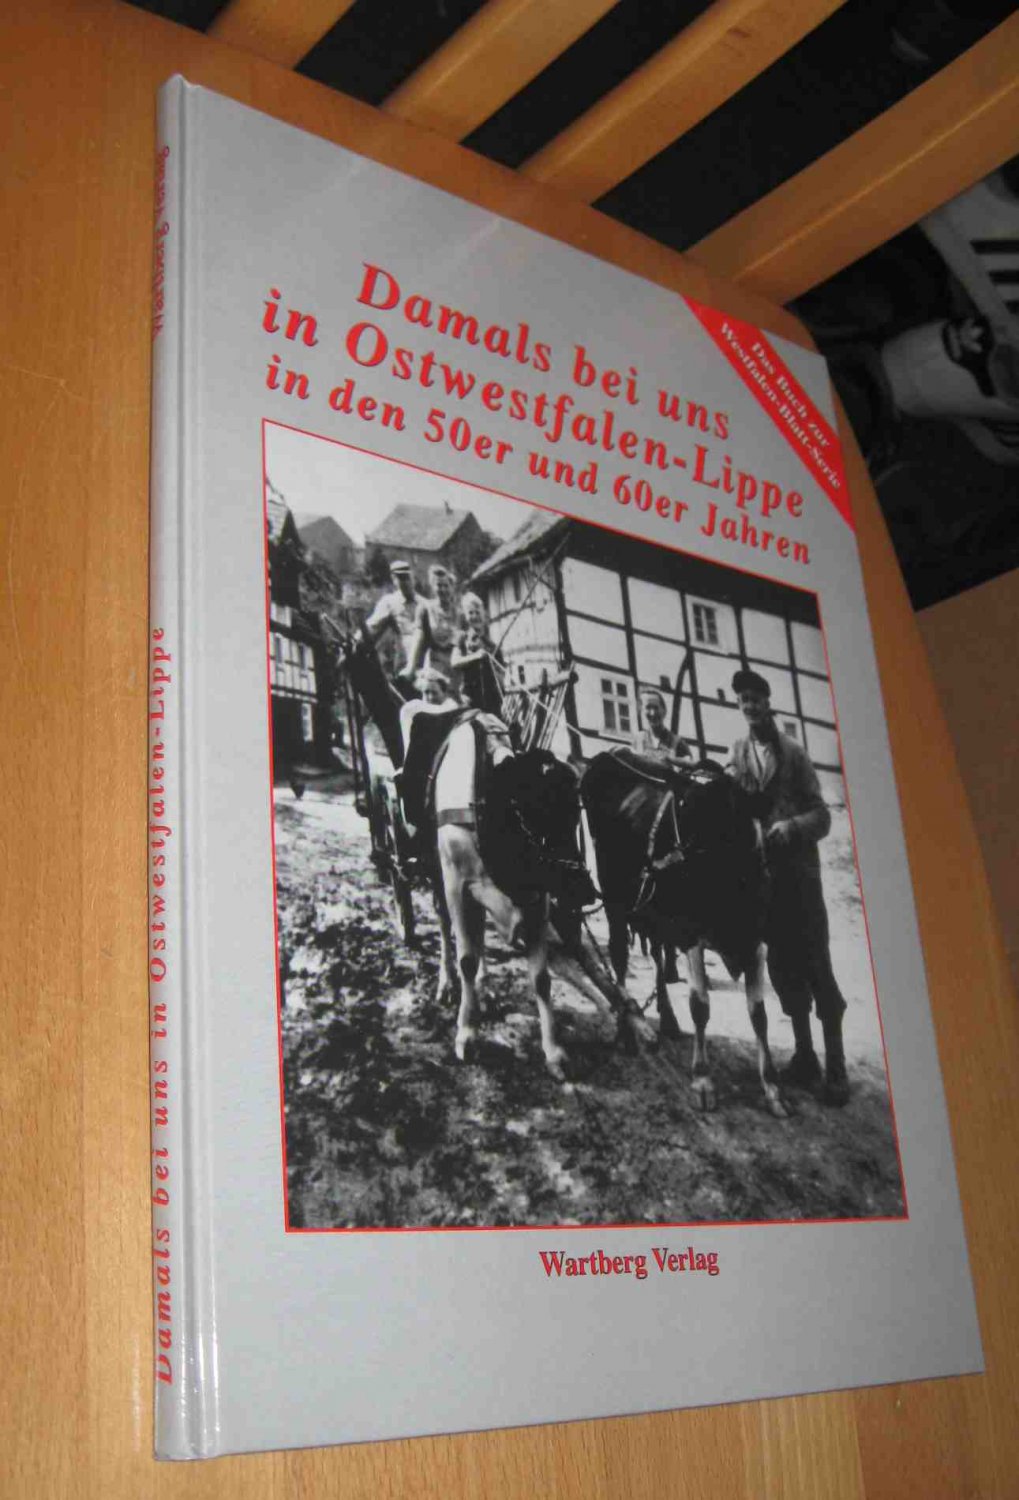 Damals bei uns in Ostwestfalen- Lippe in den 50er und 60er Jahren  1. Auflage - Wartberg Verlag ( Hrsg.)